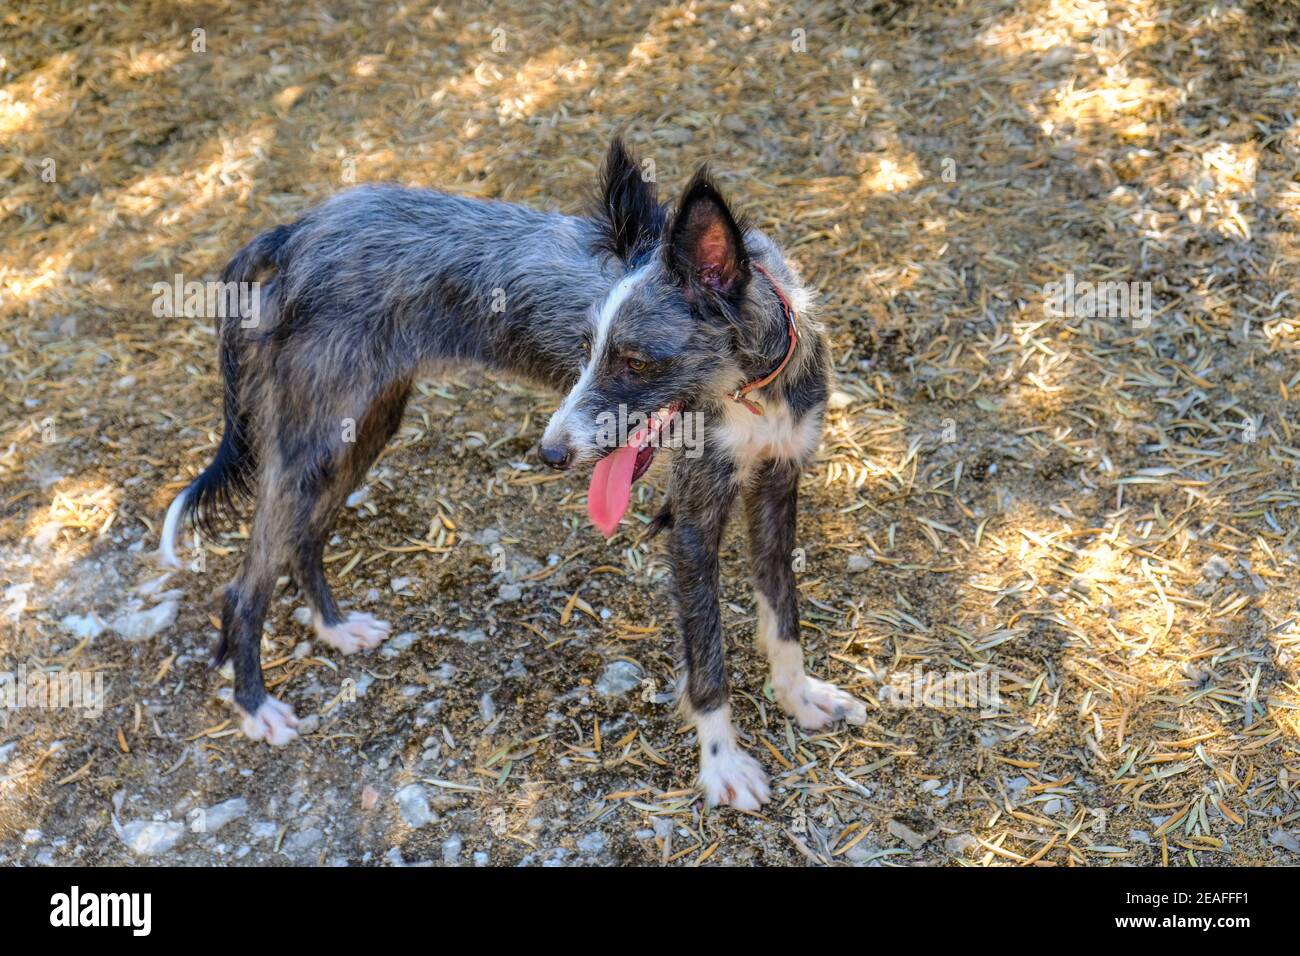 Marl gris Espagnol Podanco Valenciano chien de chasse. Sierras Subbeticas, province de Cordoue, Andalousie, Espagne Banque D'Images